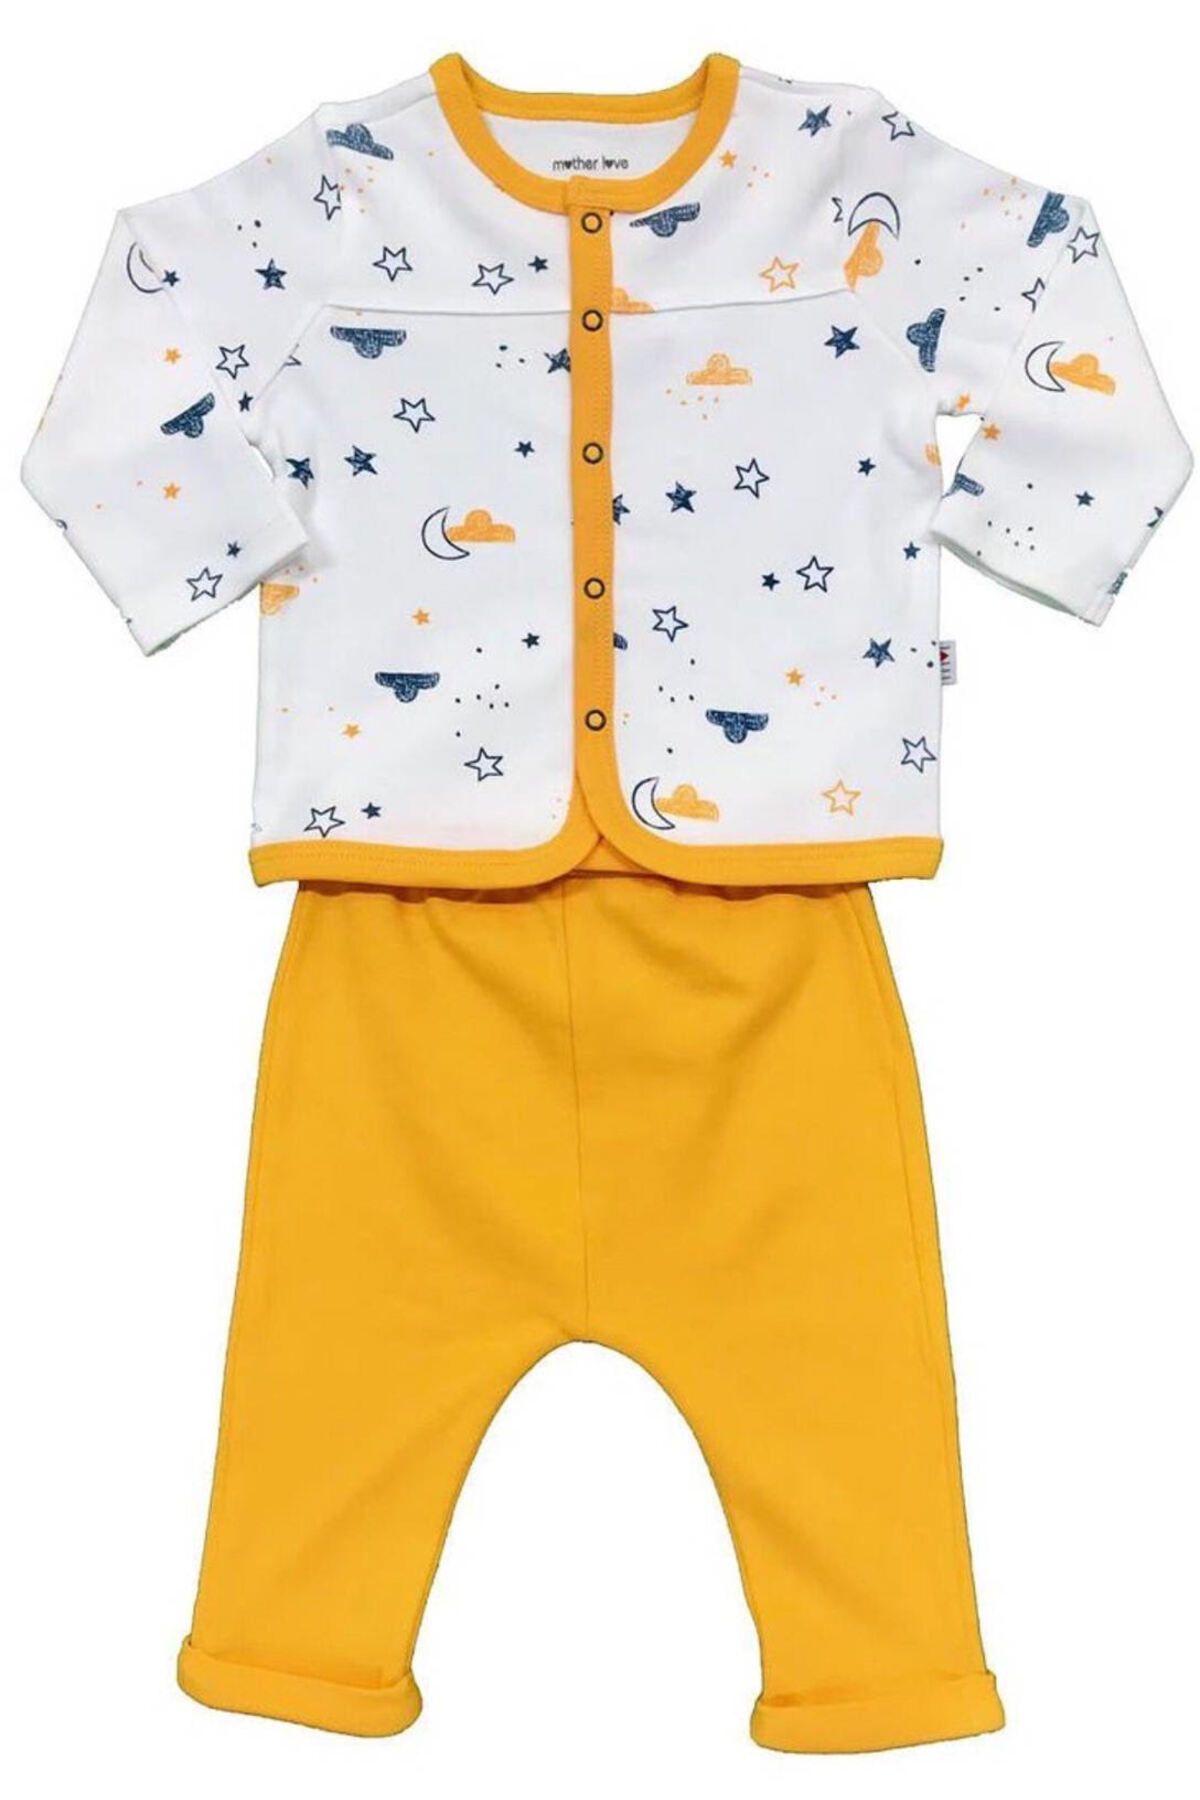 Mother Love Unisex Bebek Organik Sertifikalı Kumaş Yıldız Ve Ay Desenli Önden Çıtçıtlı Alt Üst Pijama Takımı